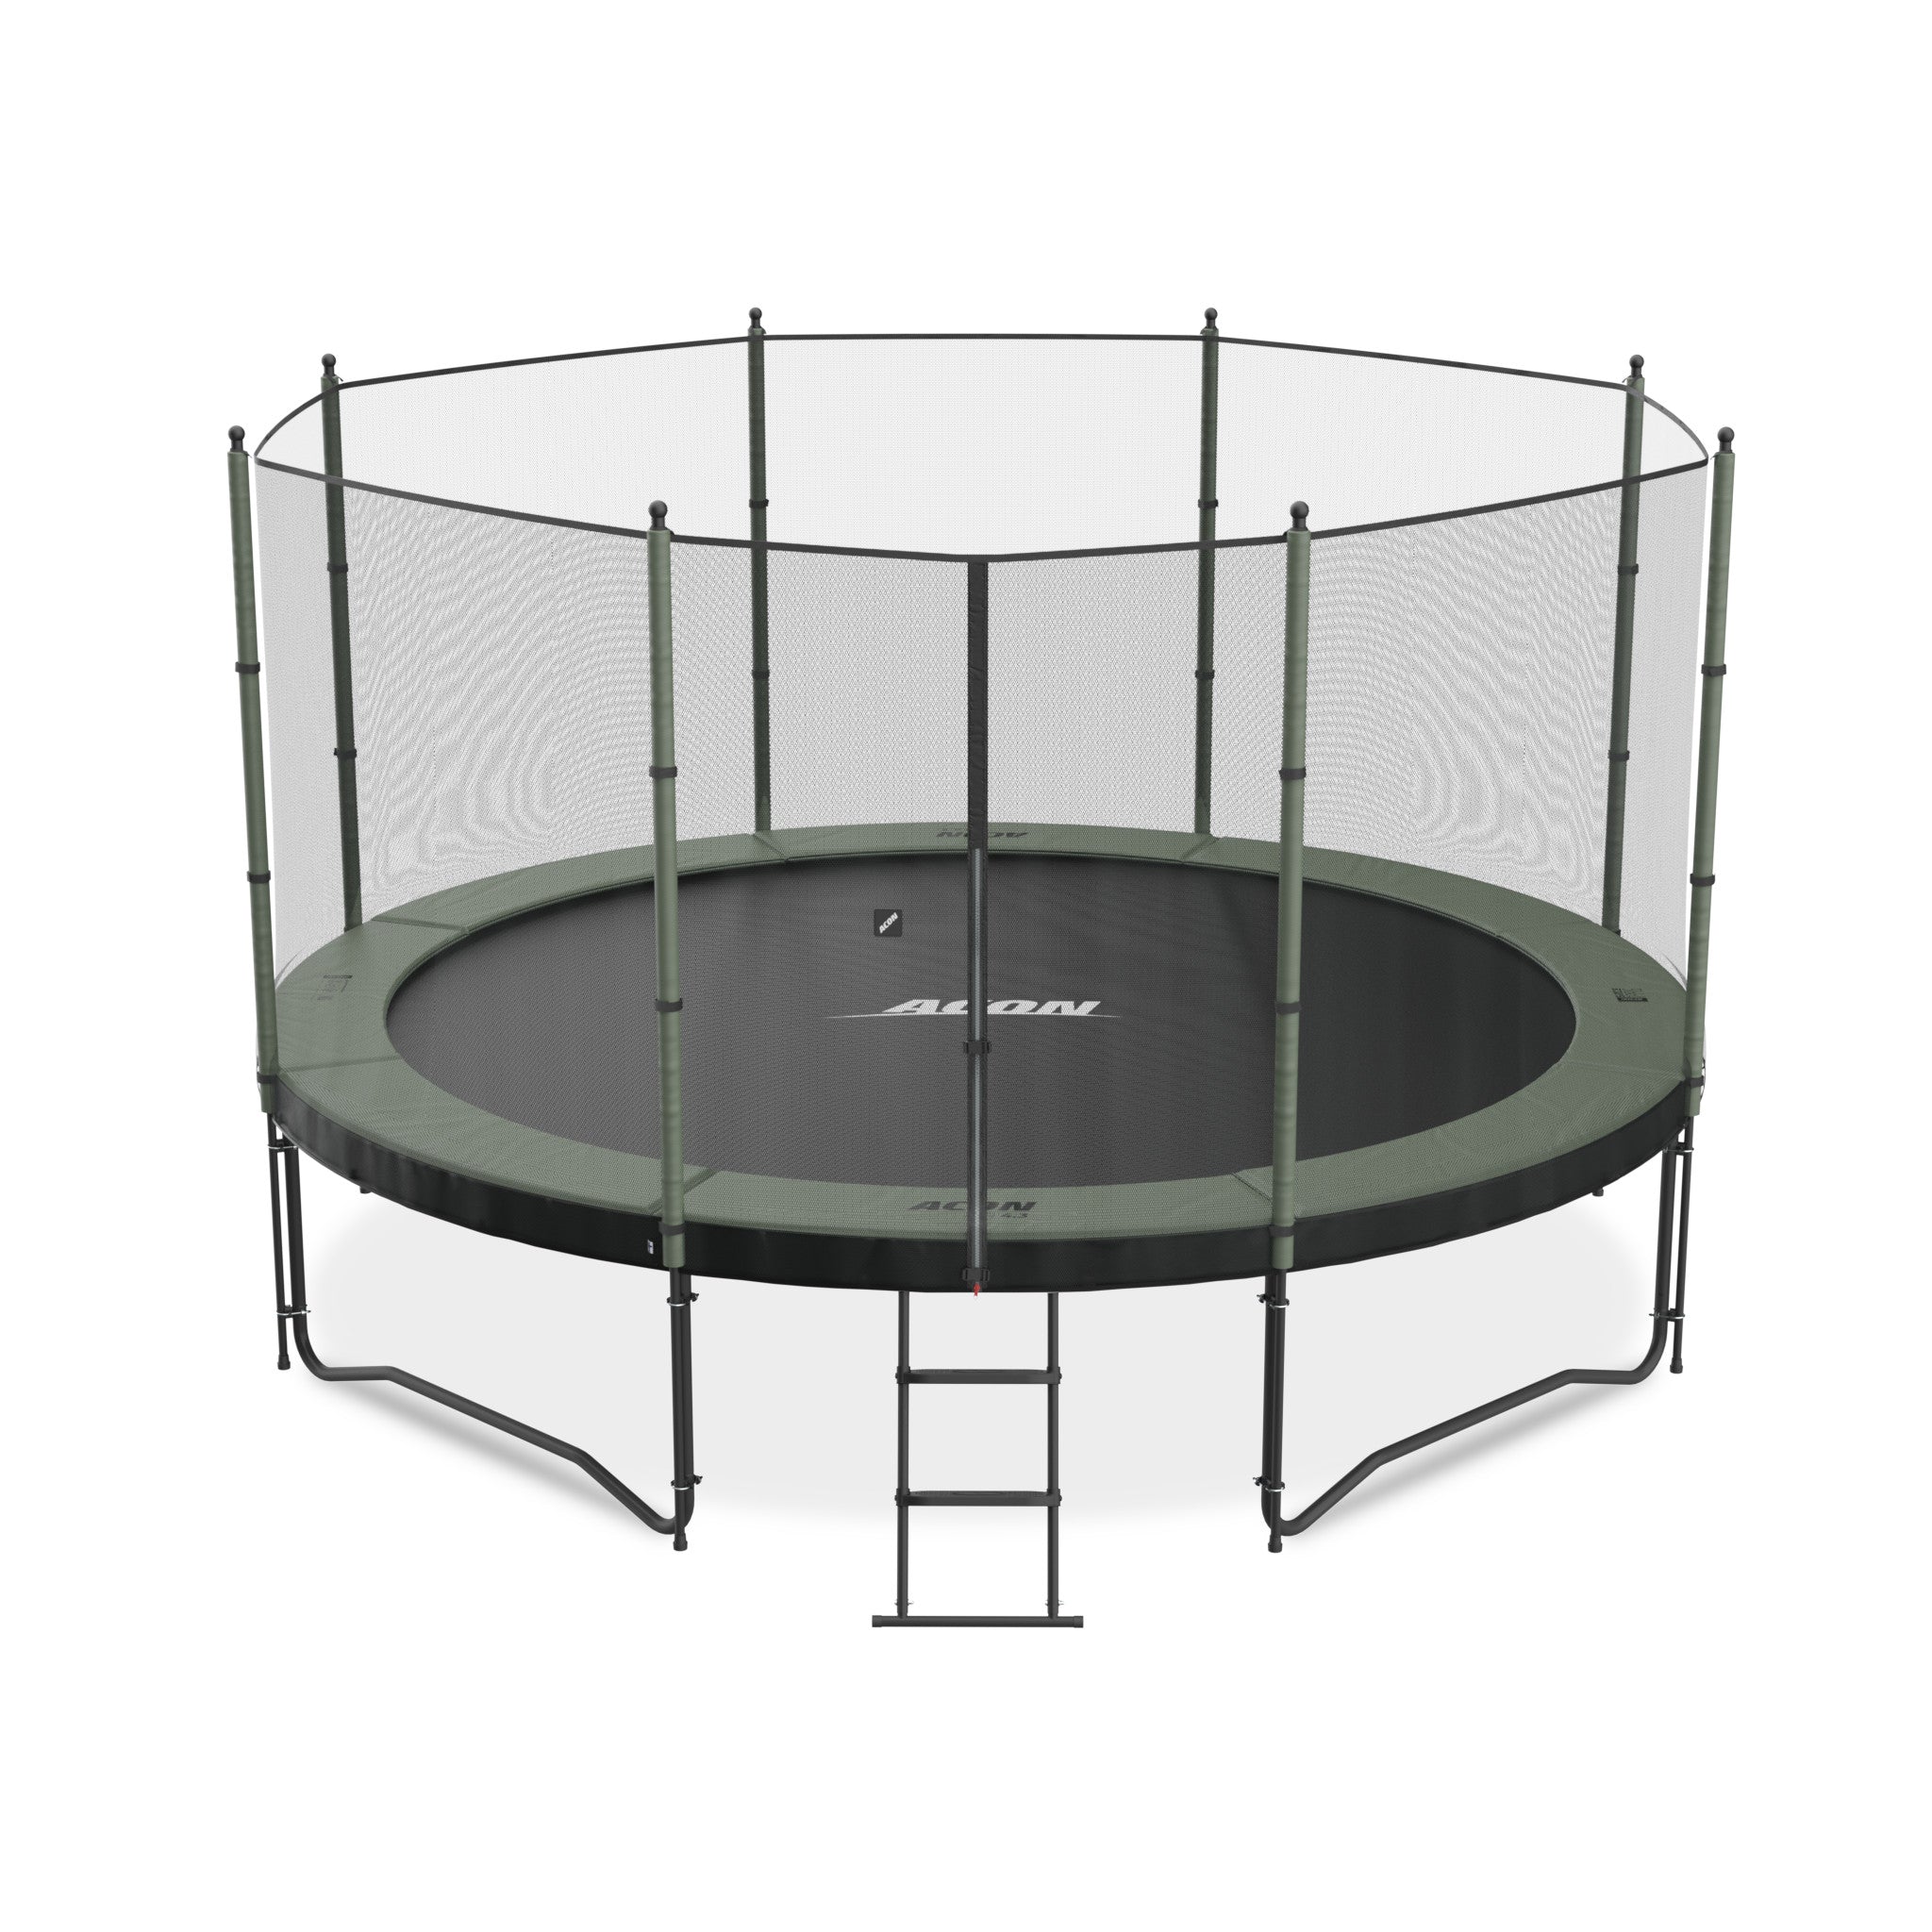 ACON Air 4,3m trampoliini, Standard turvaverkko ja tikkaat.